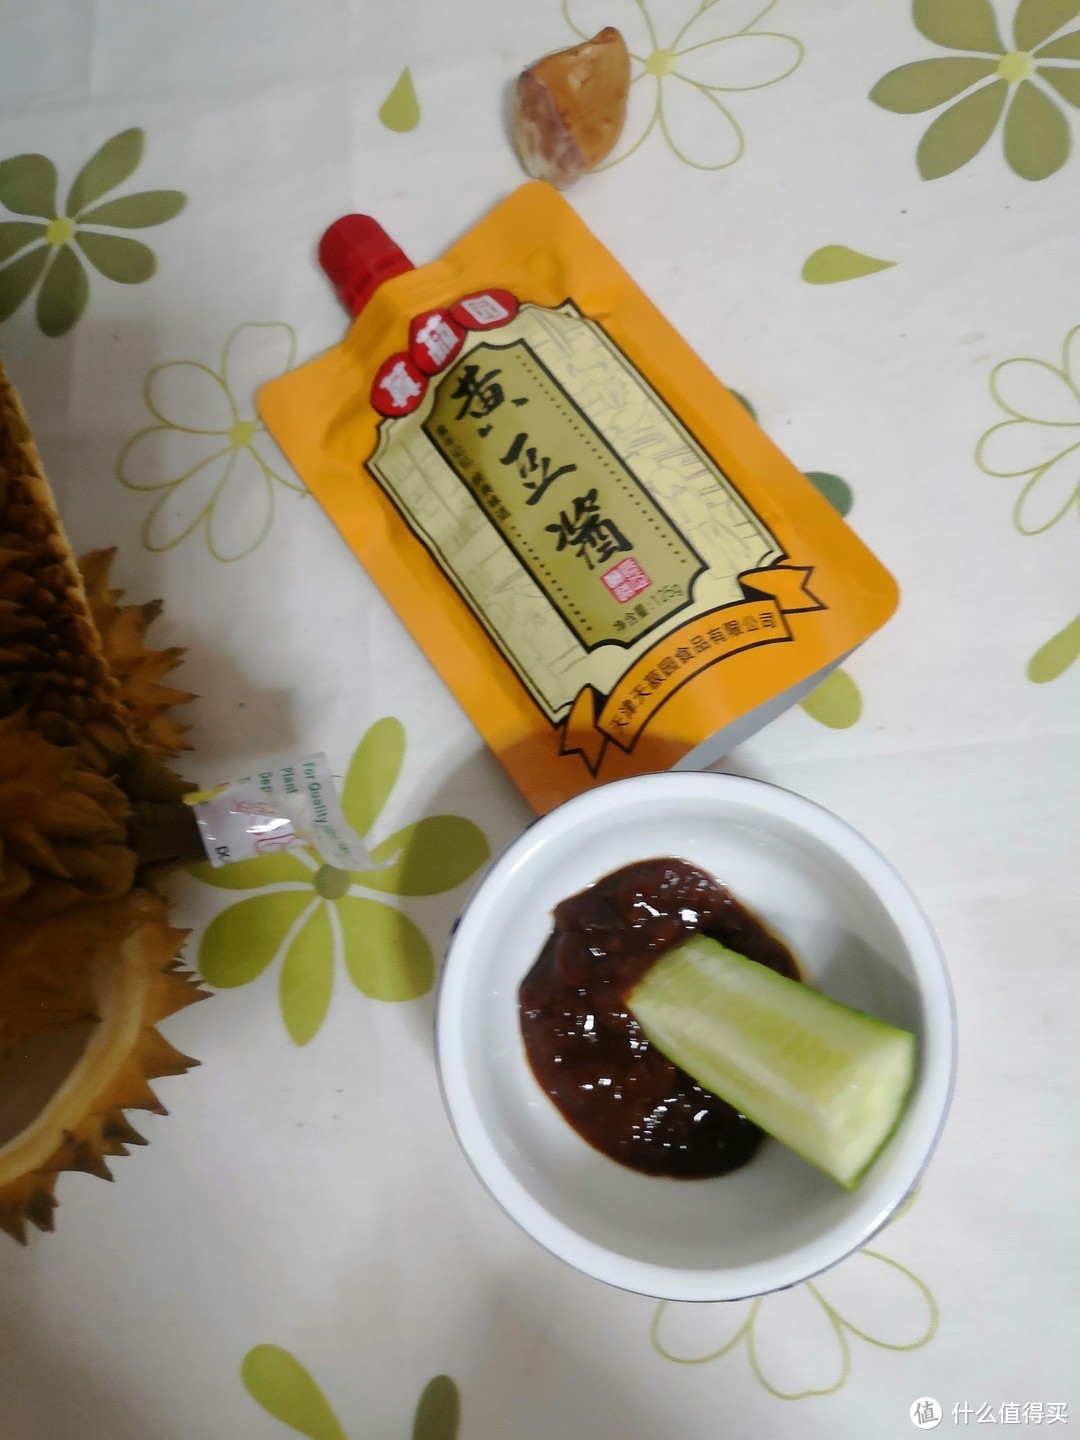 东北人在天津发现了个炒鸡好吃的黄豆酱跟老家的味道一样